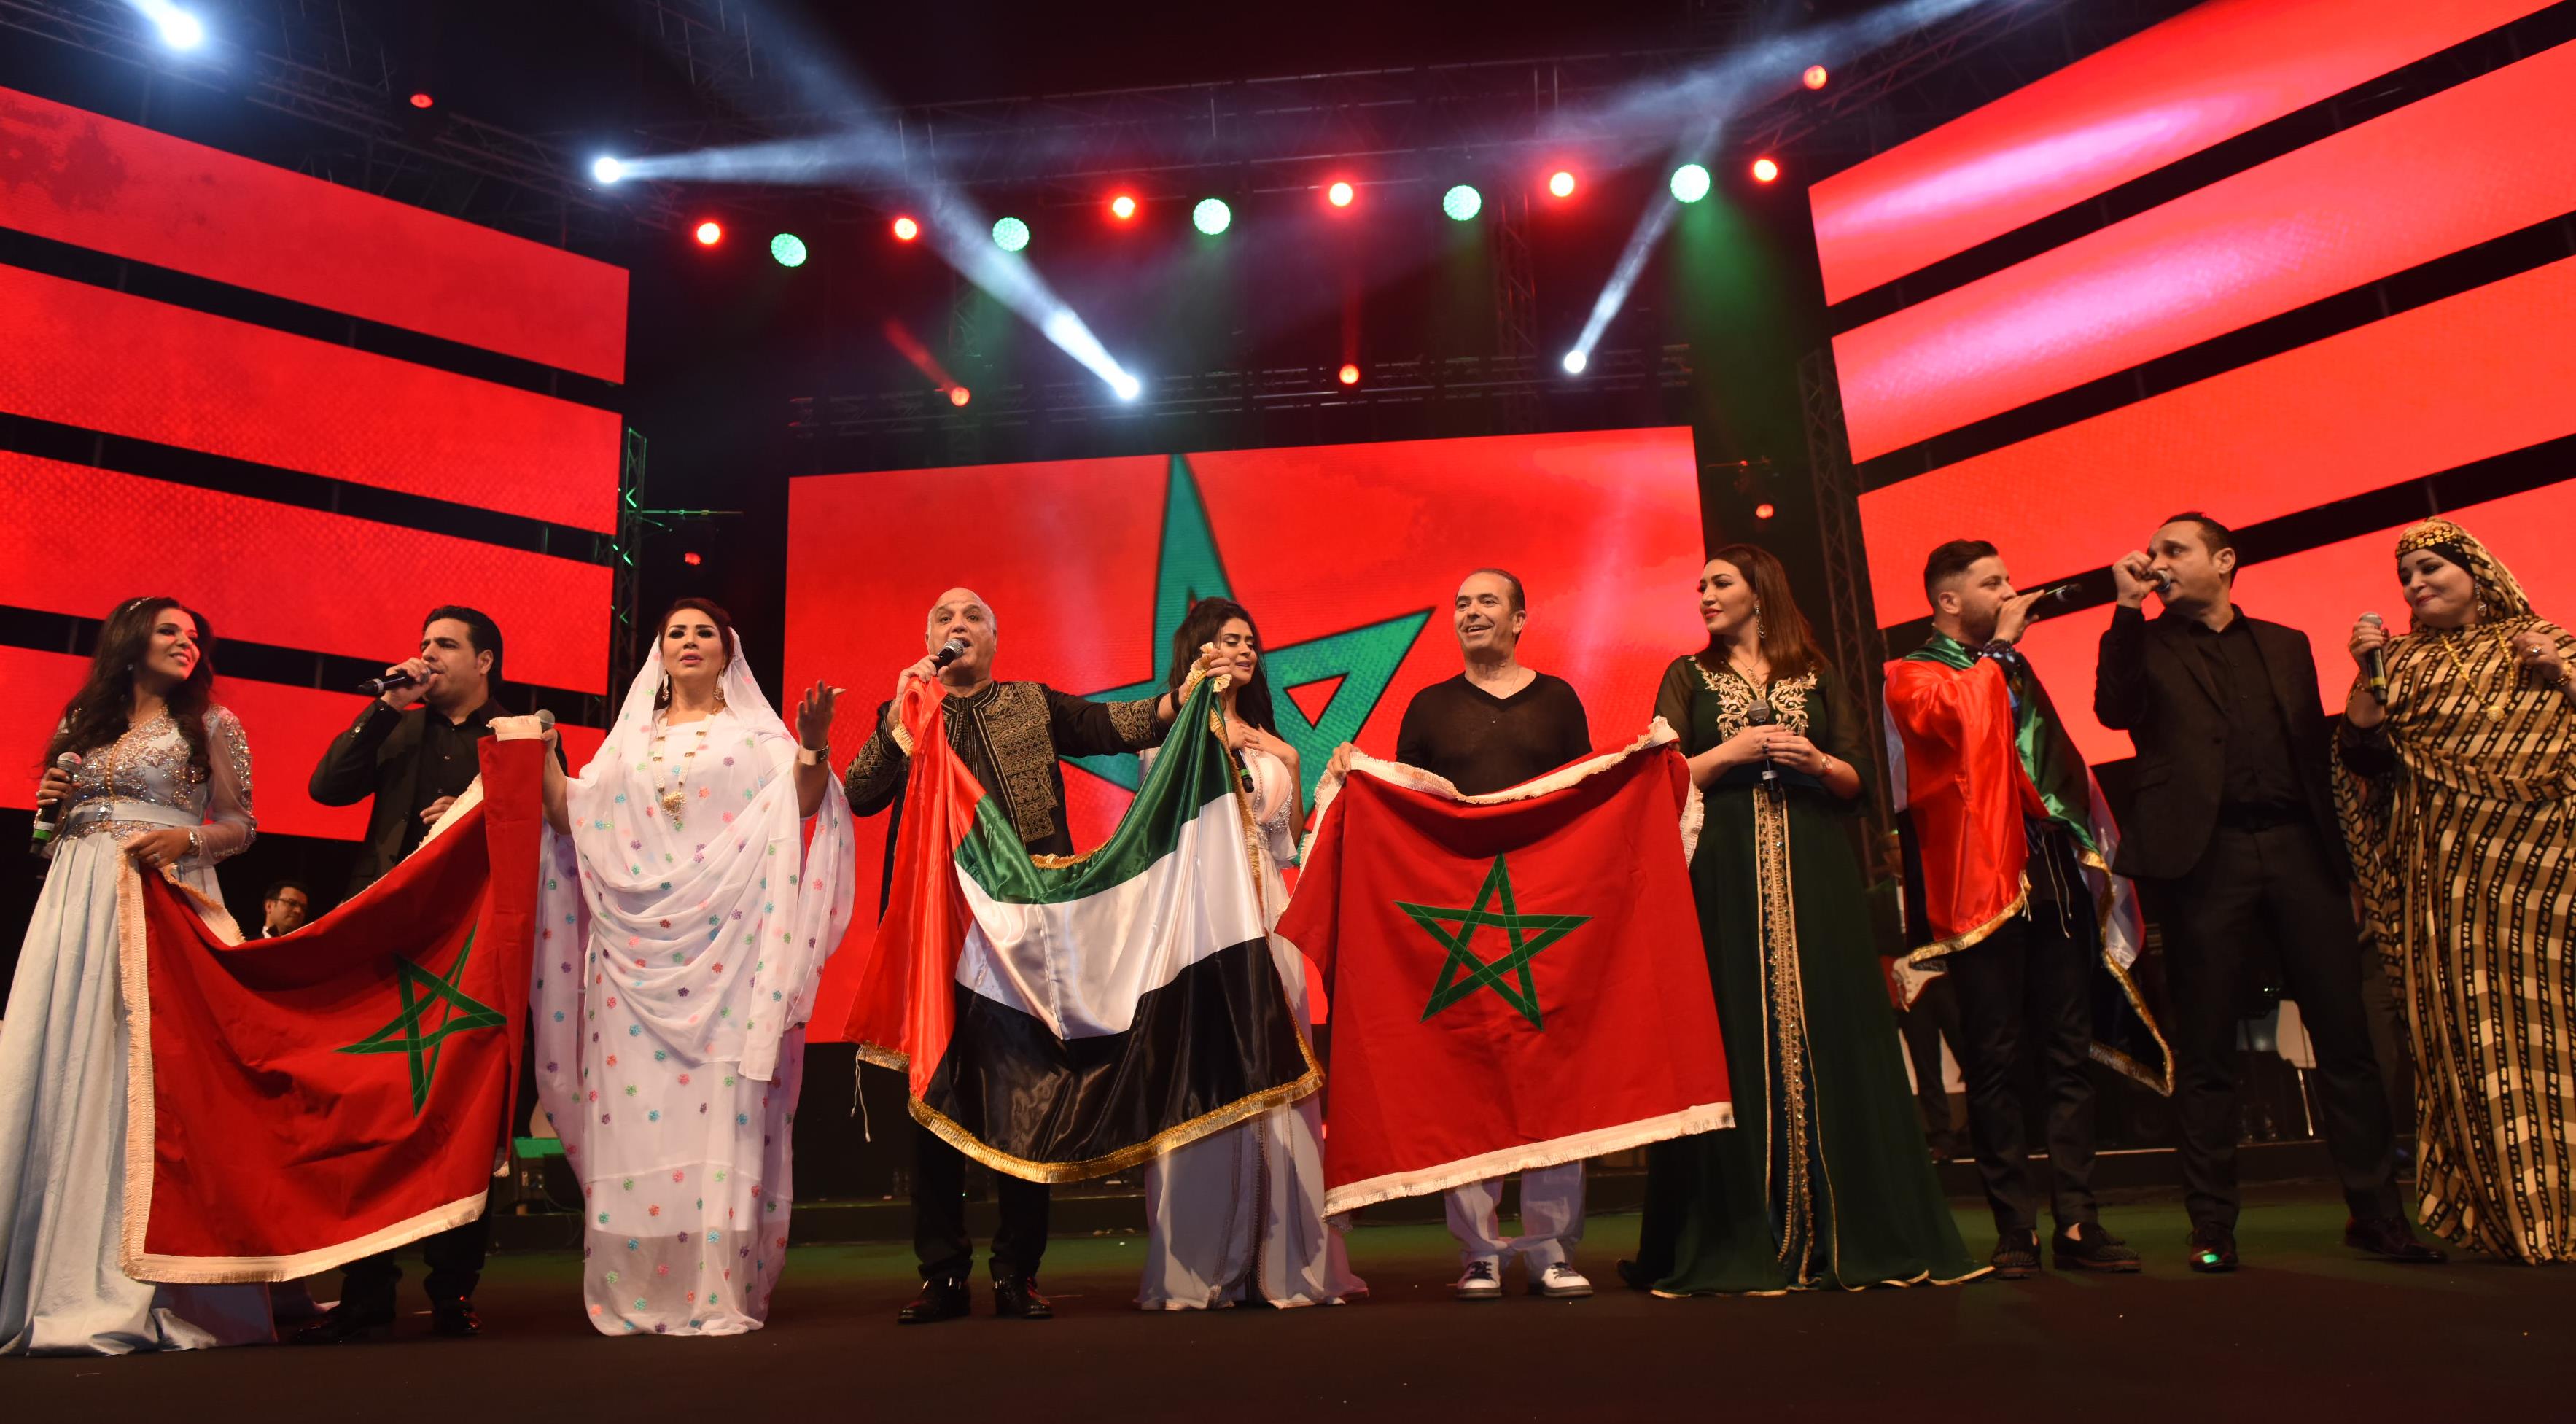 فعالية المغرب في أبوظبي